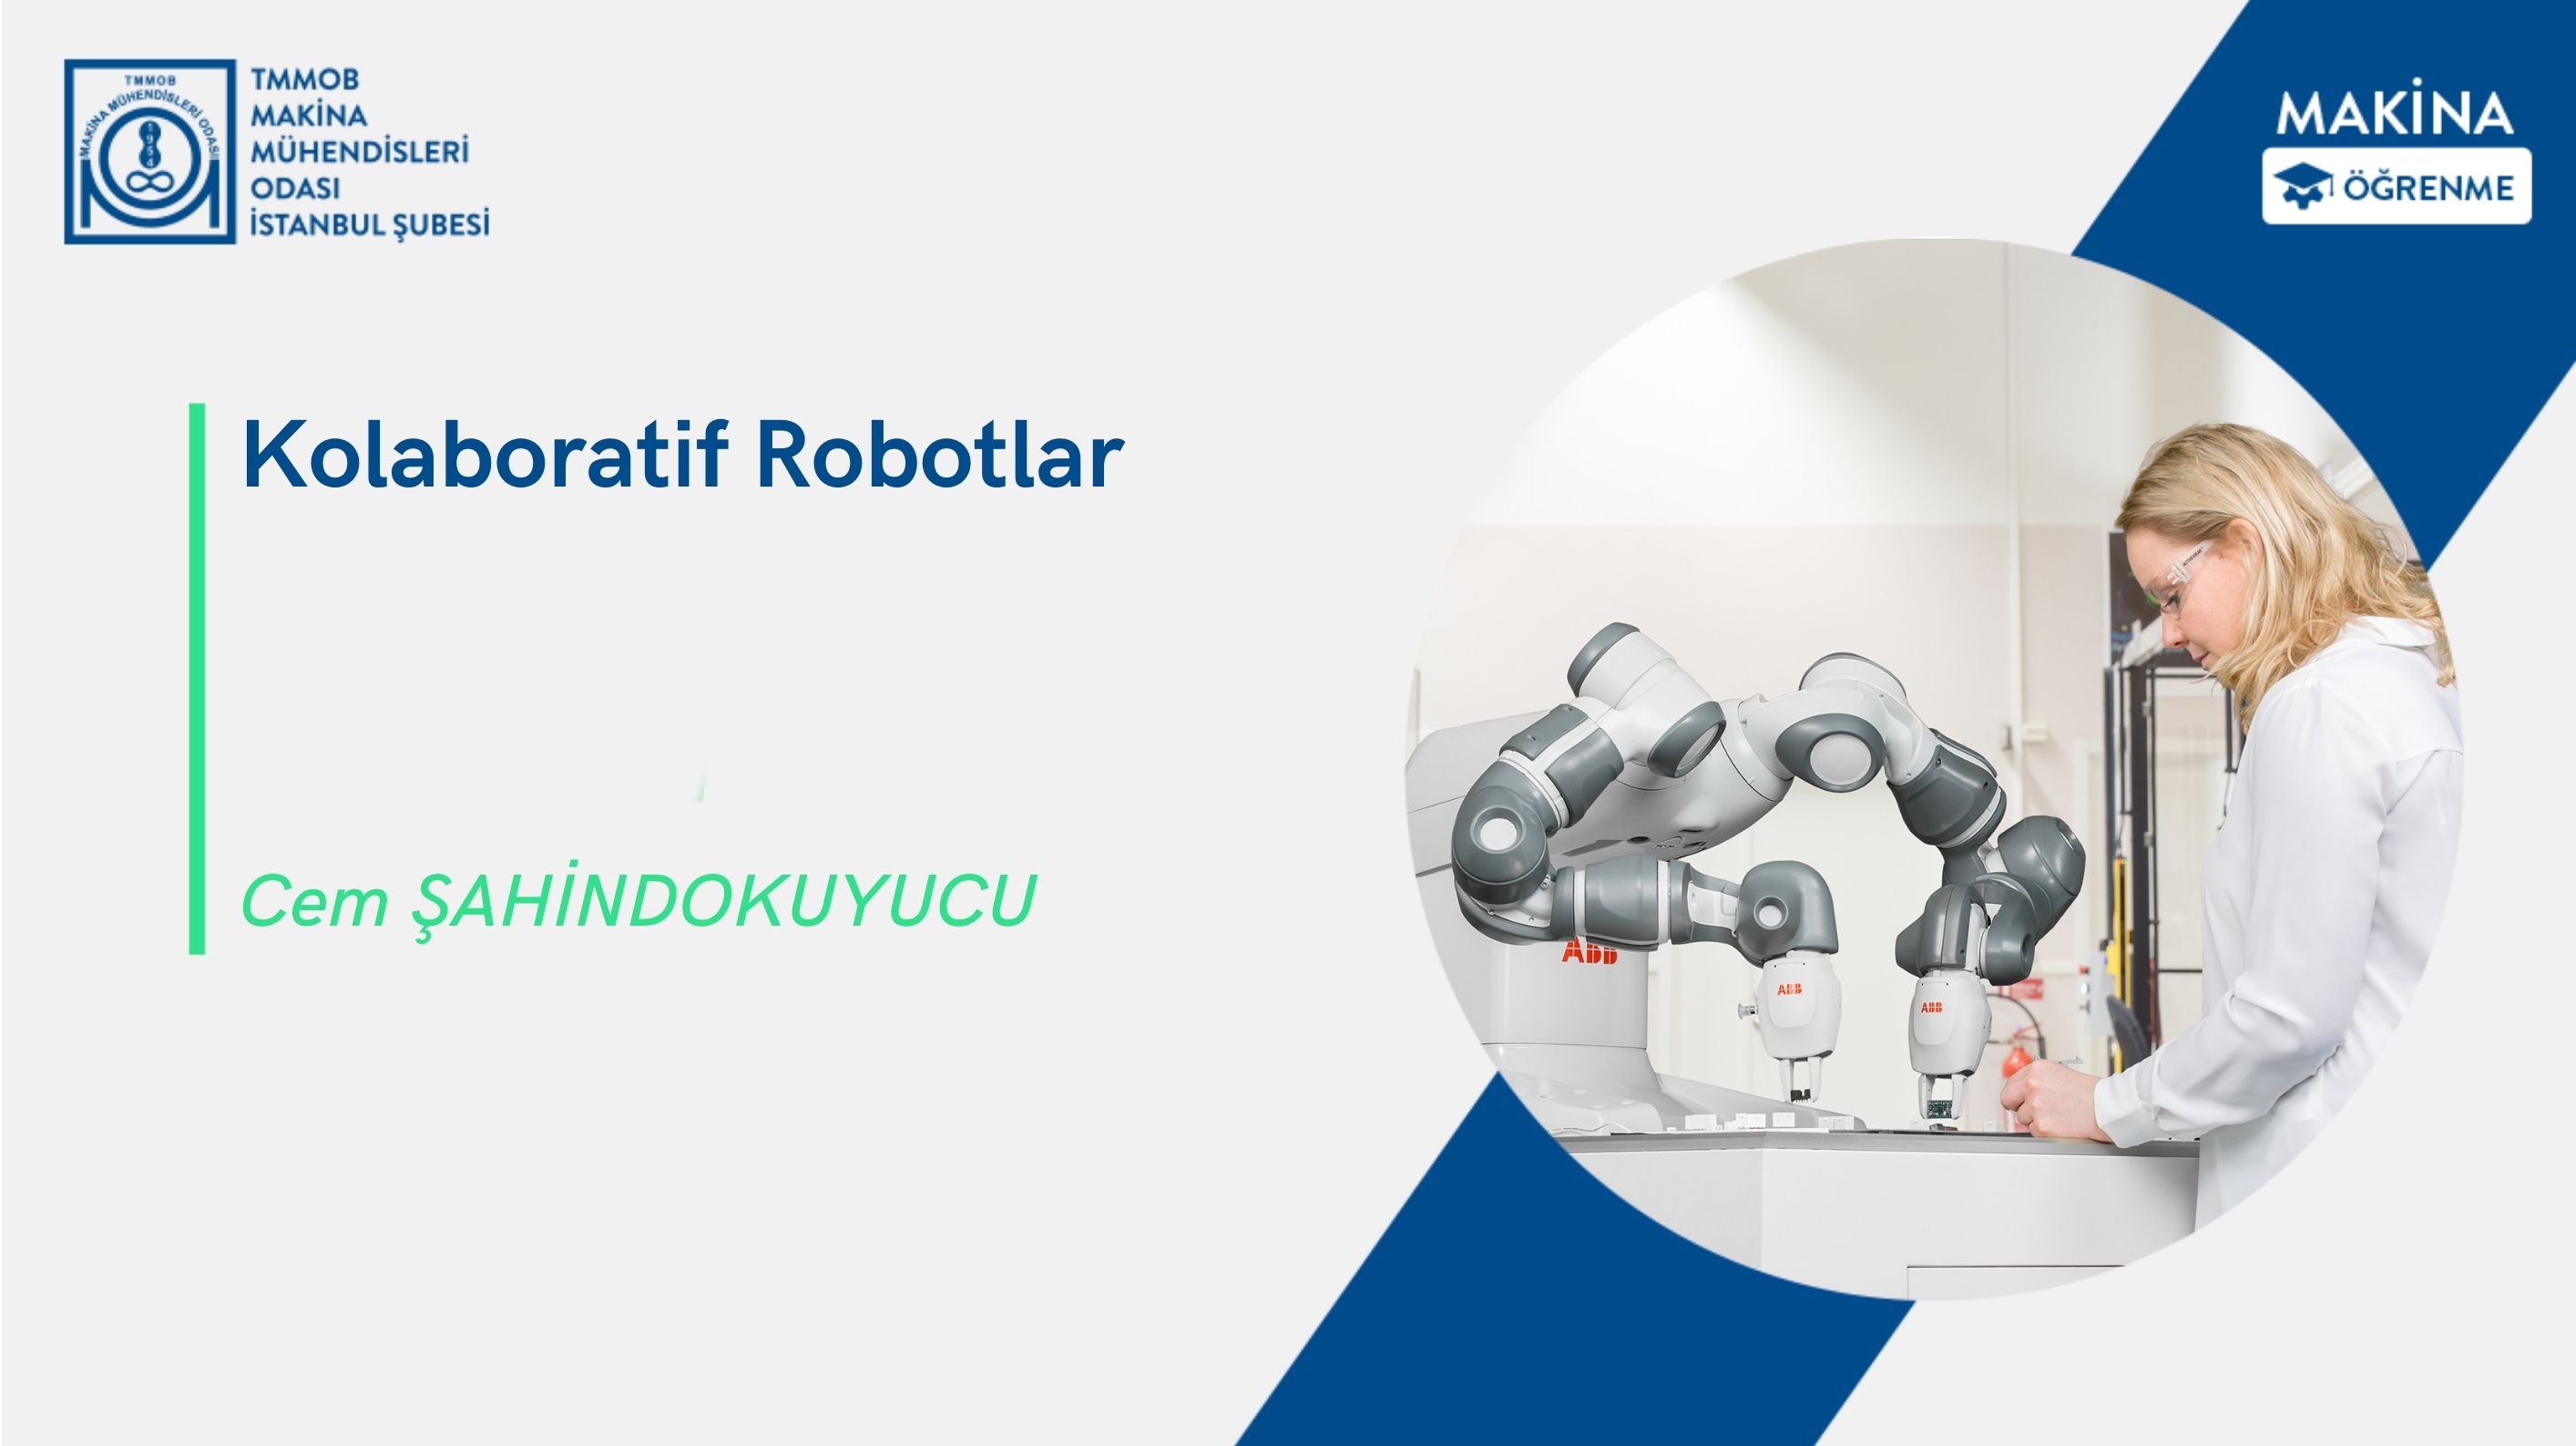 Kolaboratif Robotlar